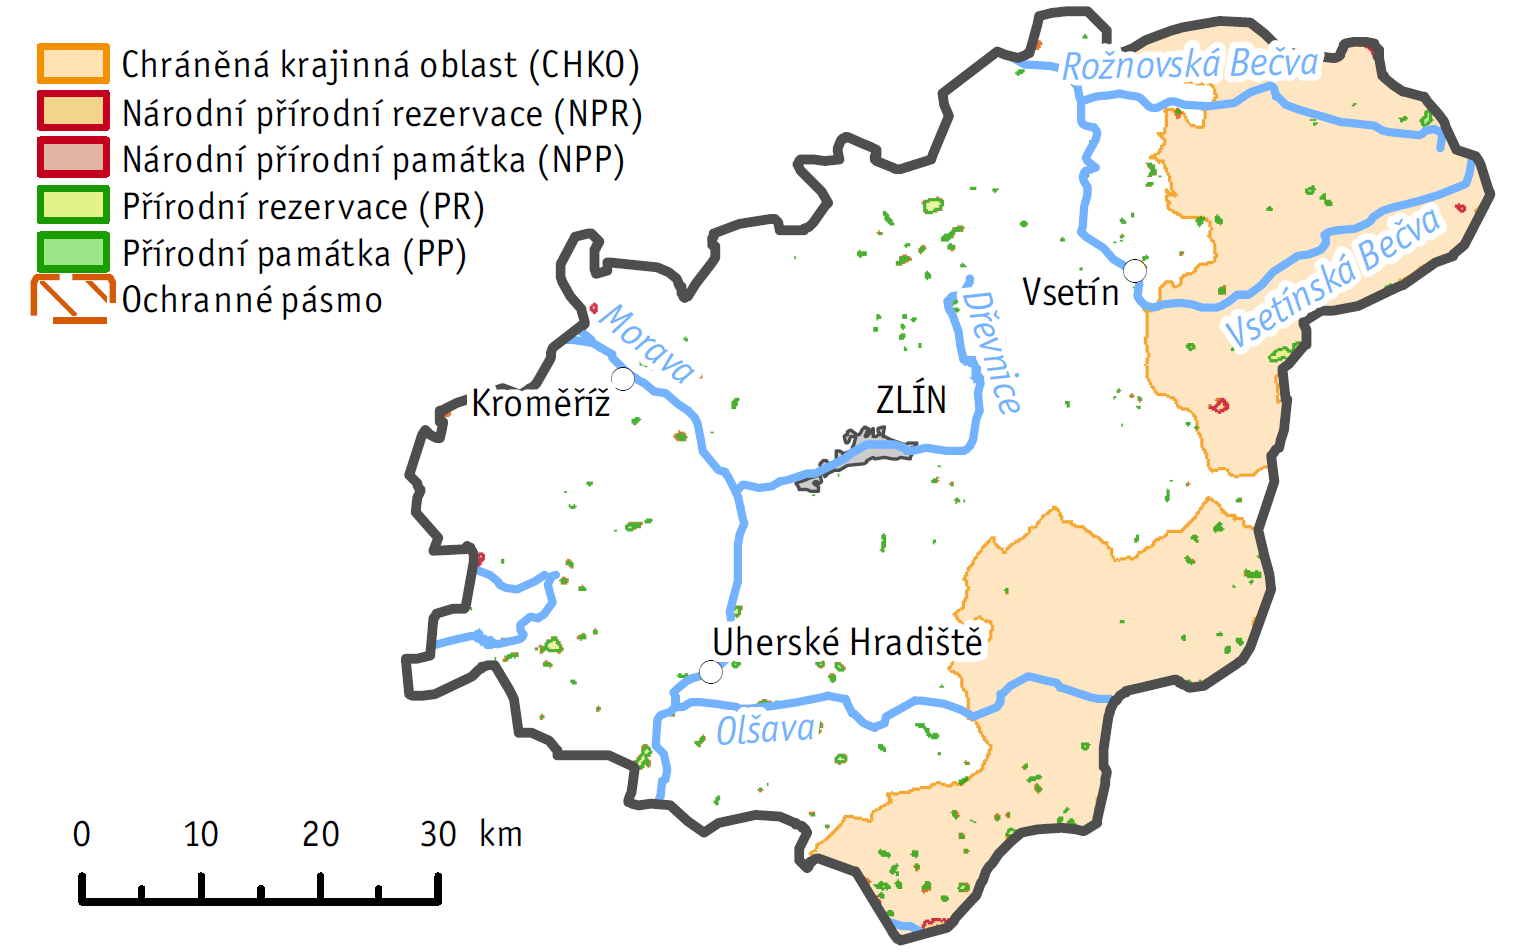 4 Ochrana přírody 4.1 Územní a druhová ochrana přírody Na území Zlínského kraje se v roce 2014 nacházela dvě velkoplošná zvláště chráněná území (Obr. 4.1.1).